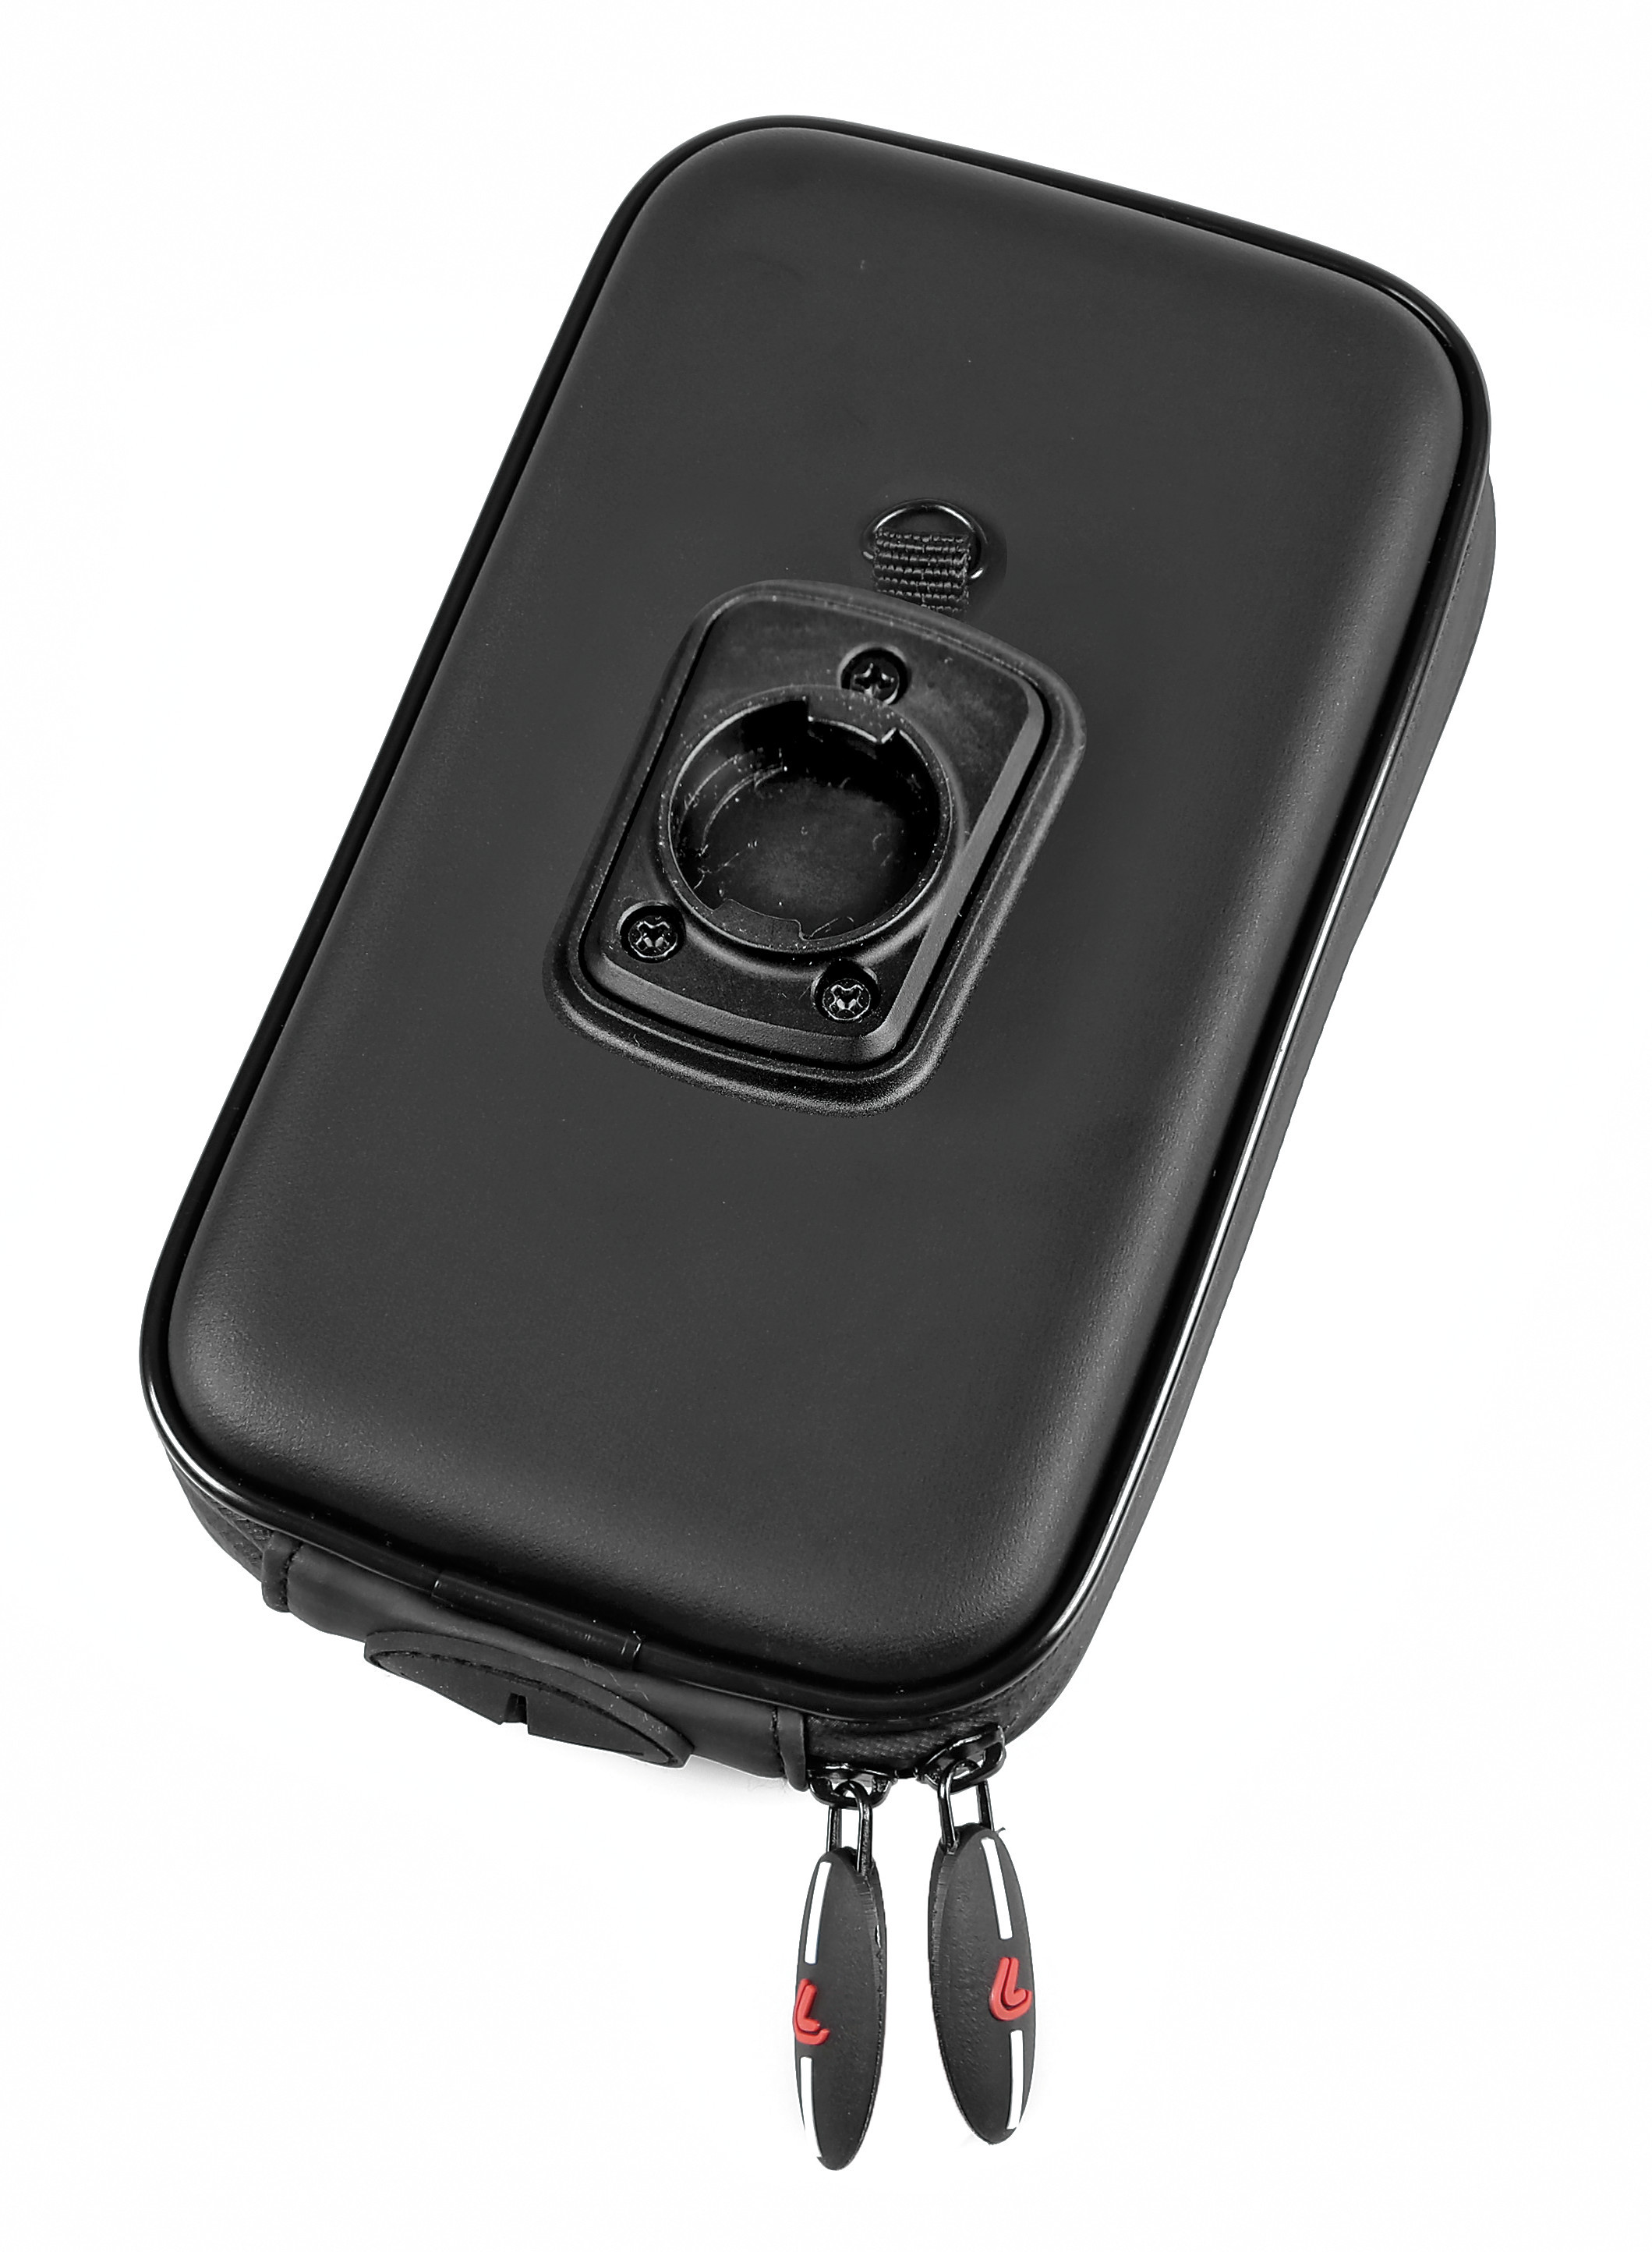 Carcasa universala Opti Case pentru suporti telefon mobil Opti Line Garage AutoRide